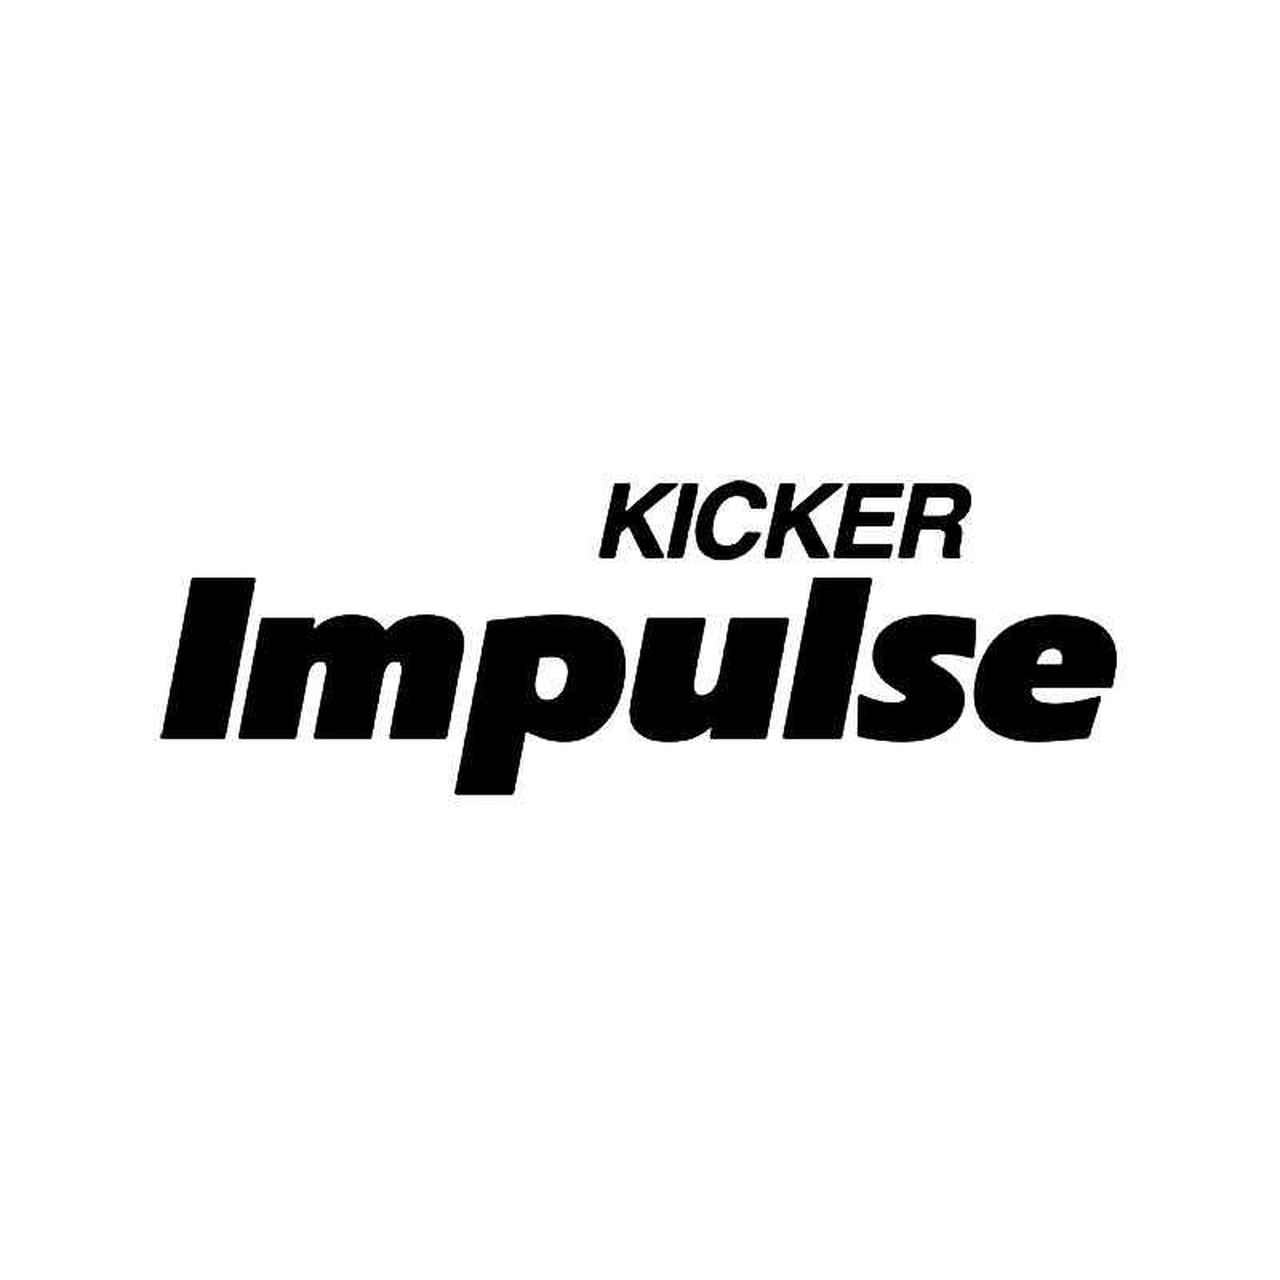 Kicker Logo - Kicker Impulse Logo Vinyl Sticker